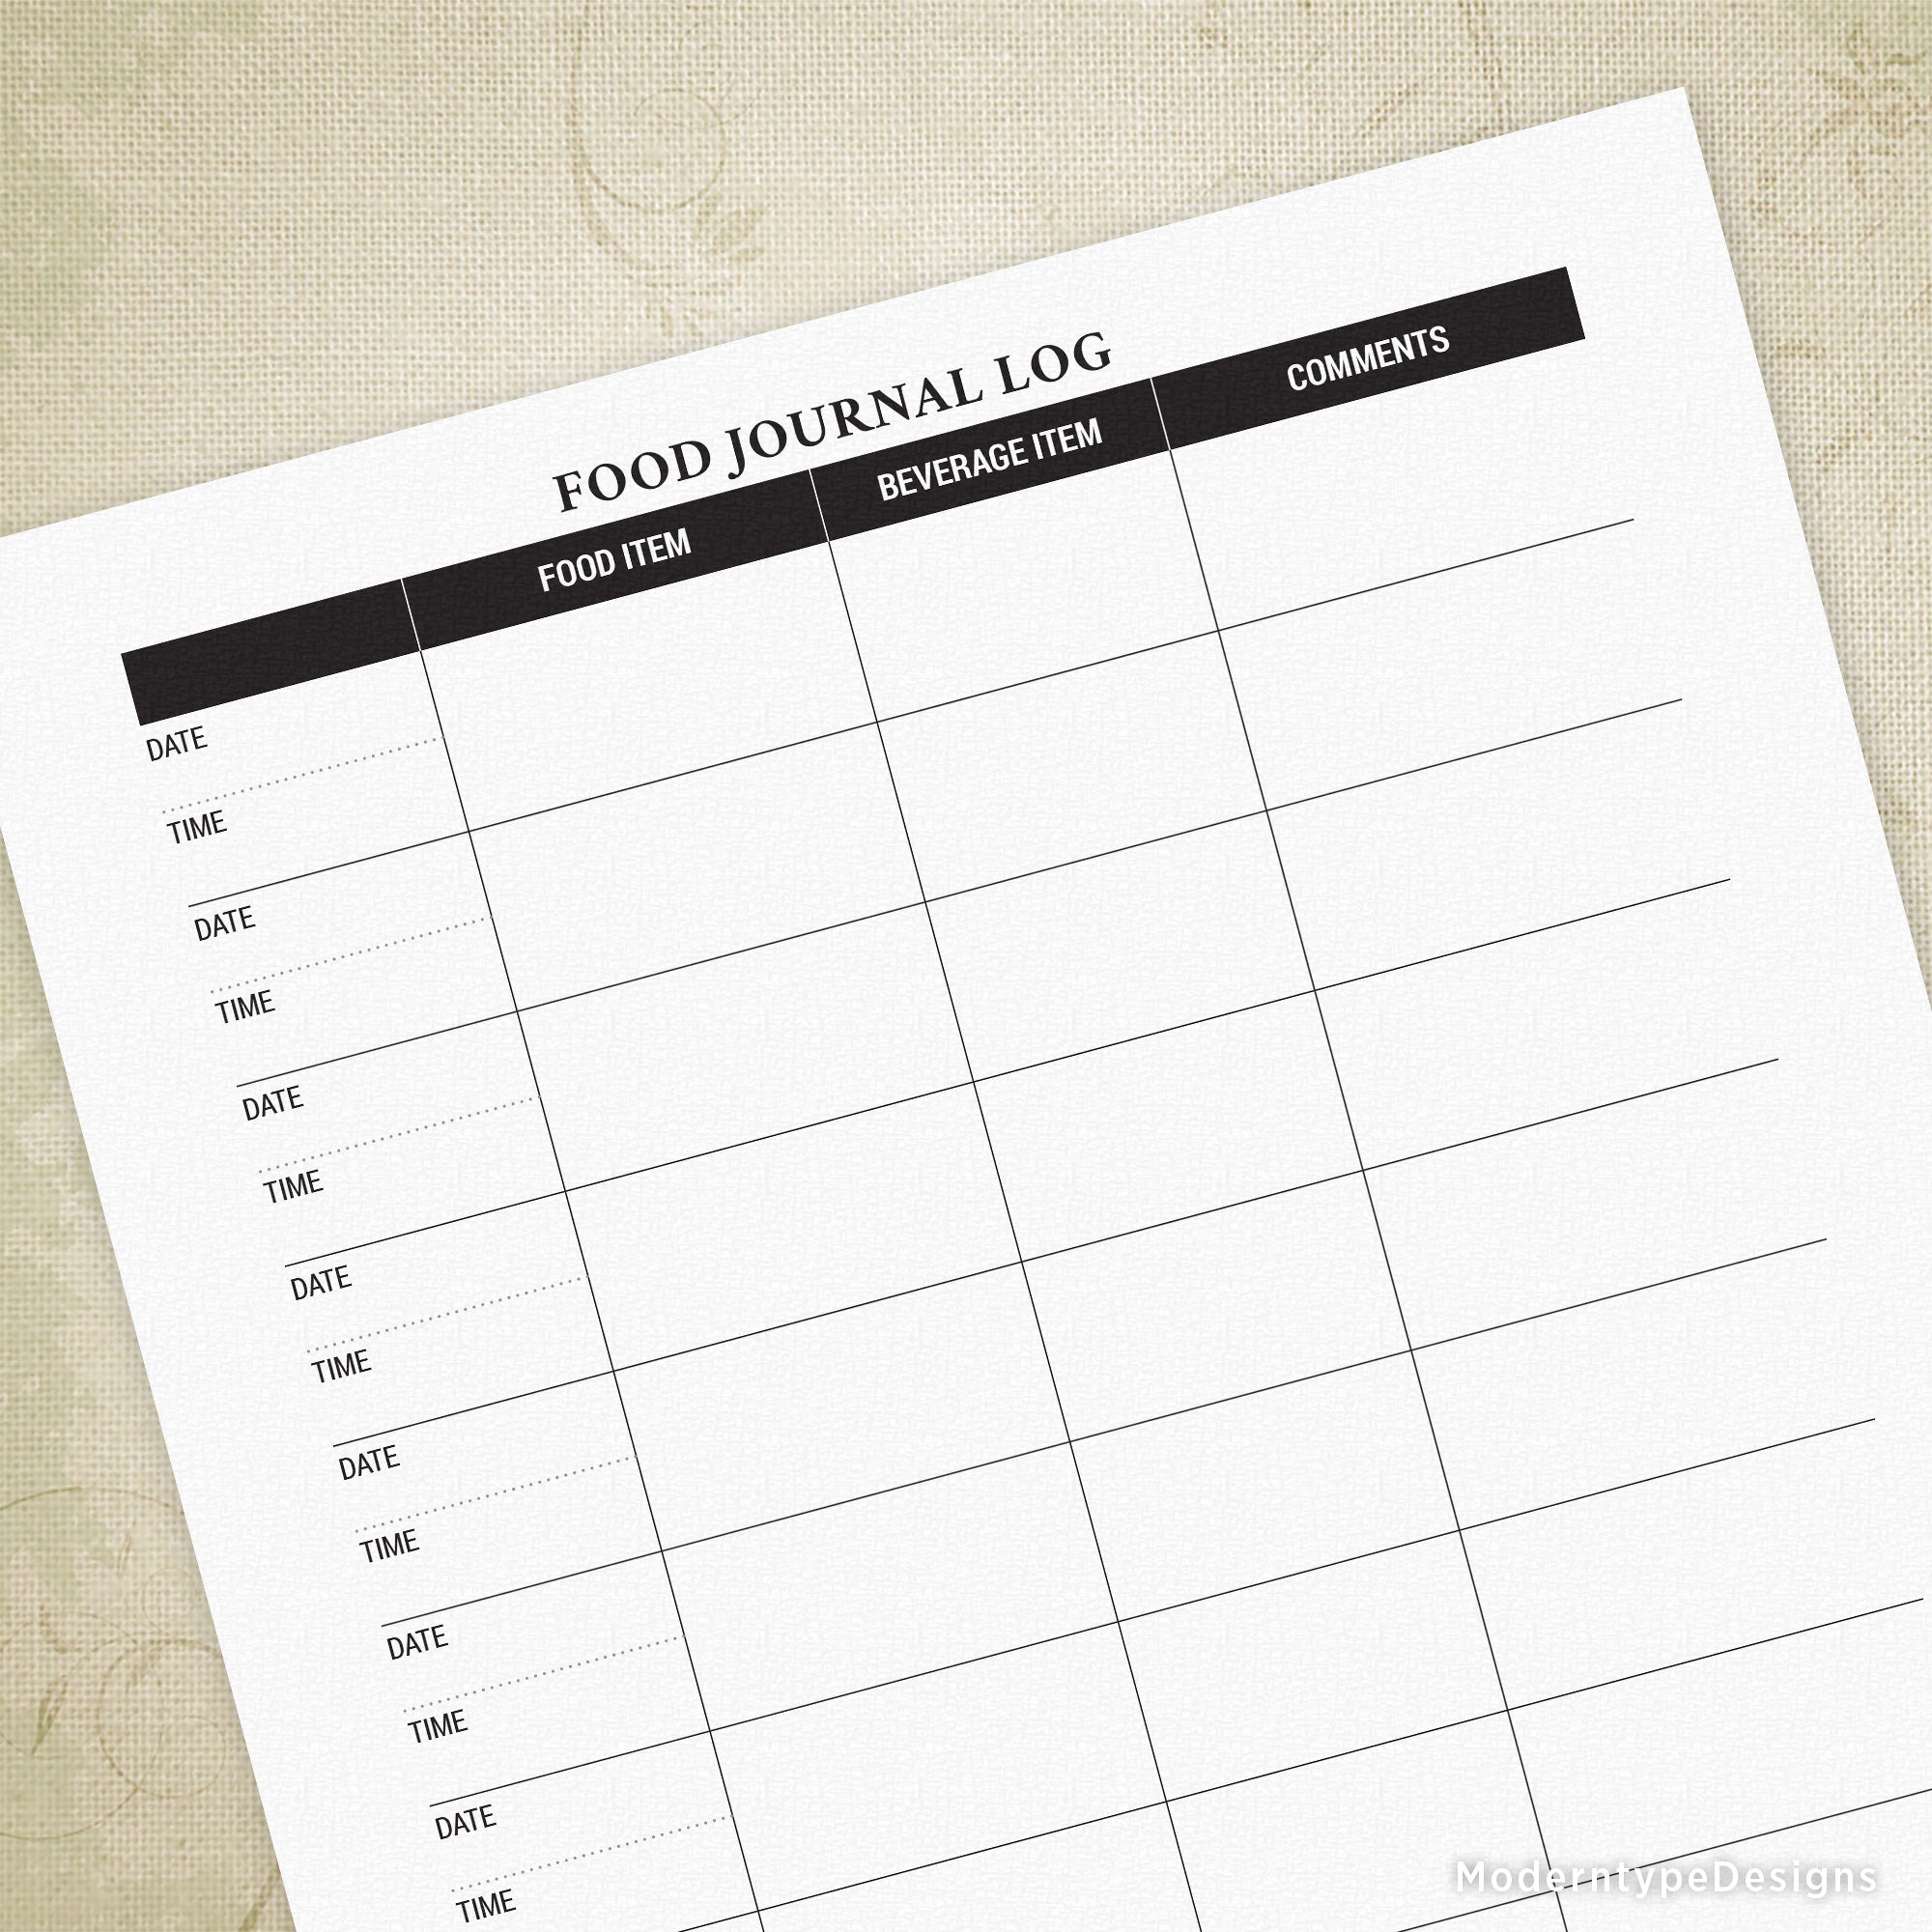 Food Journal Log Printable Form #1